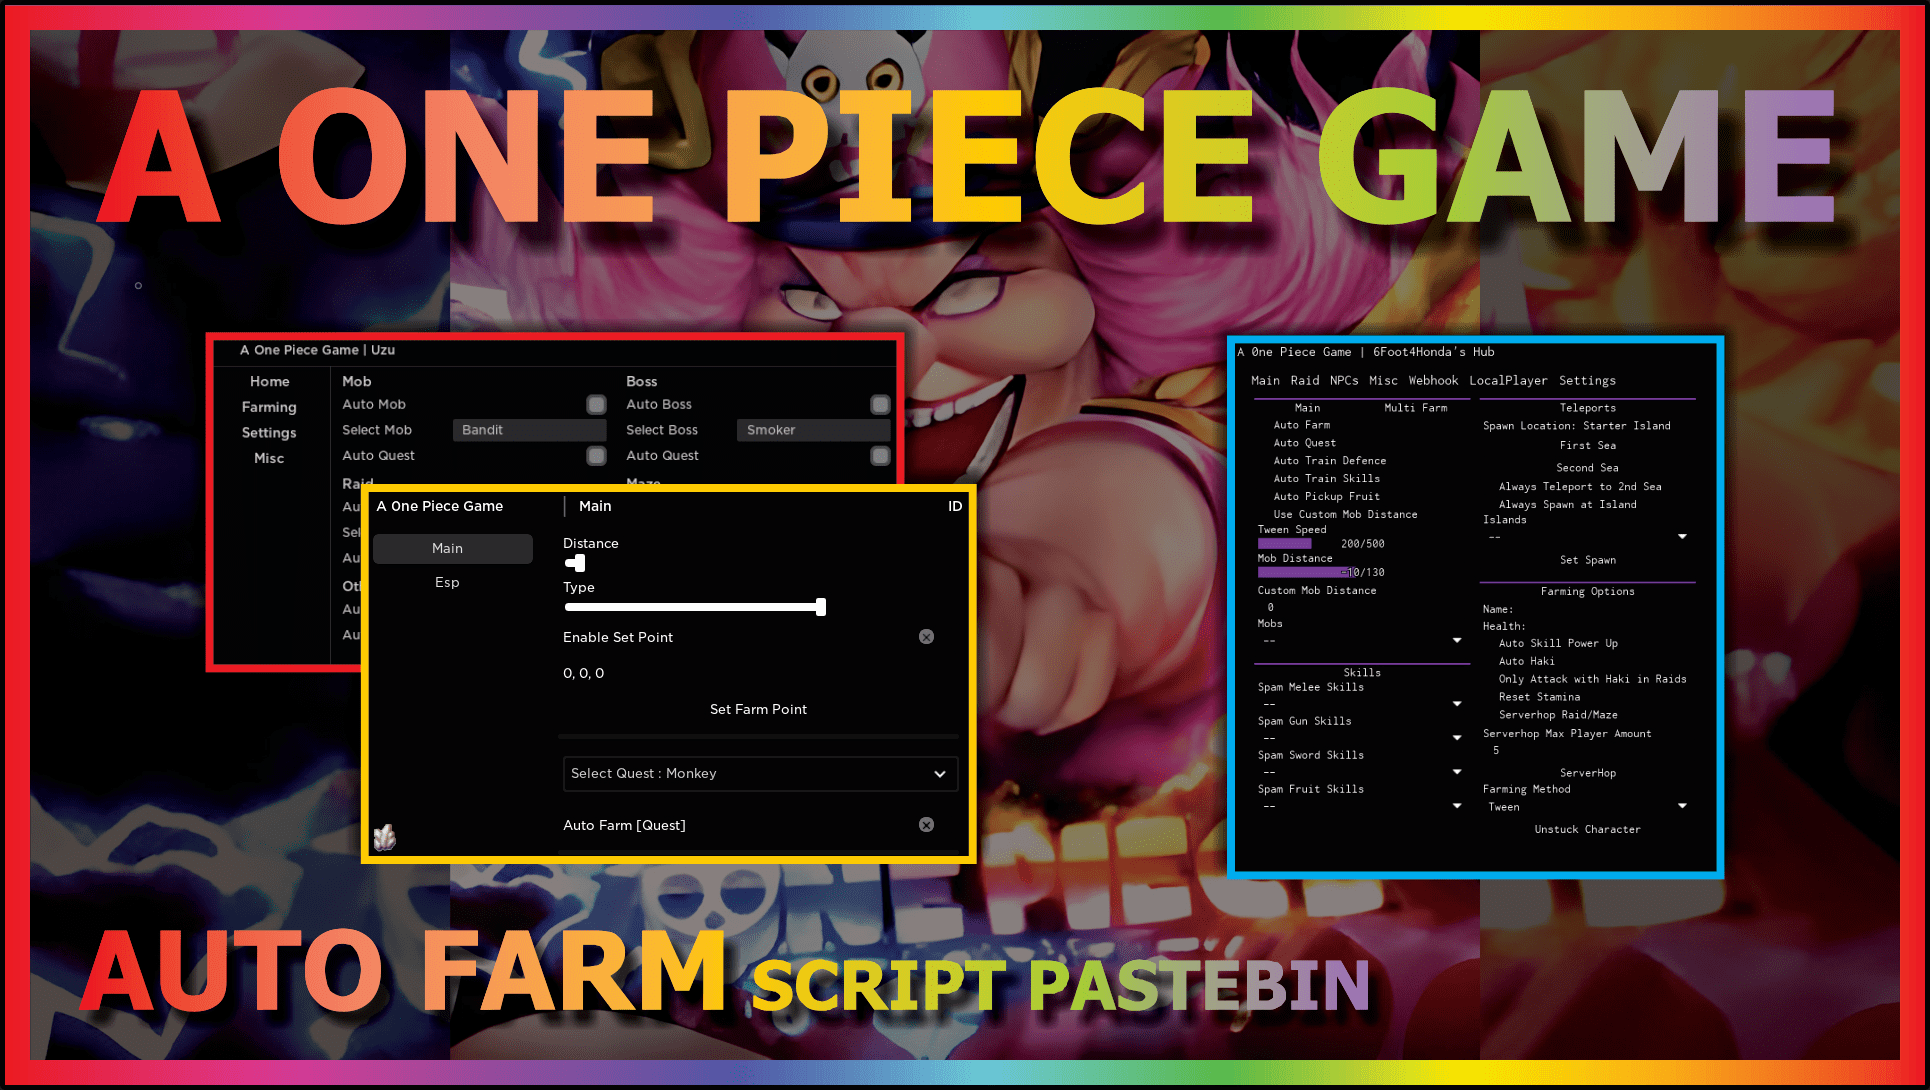 A 0ne Piece Game Script Pastebin 2022 – ScriptPastebin